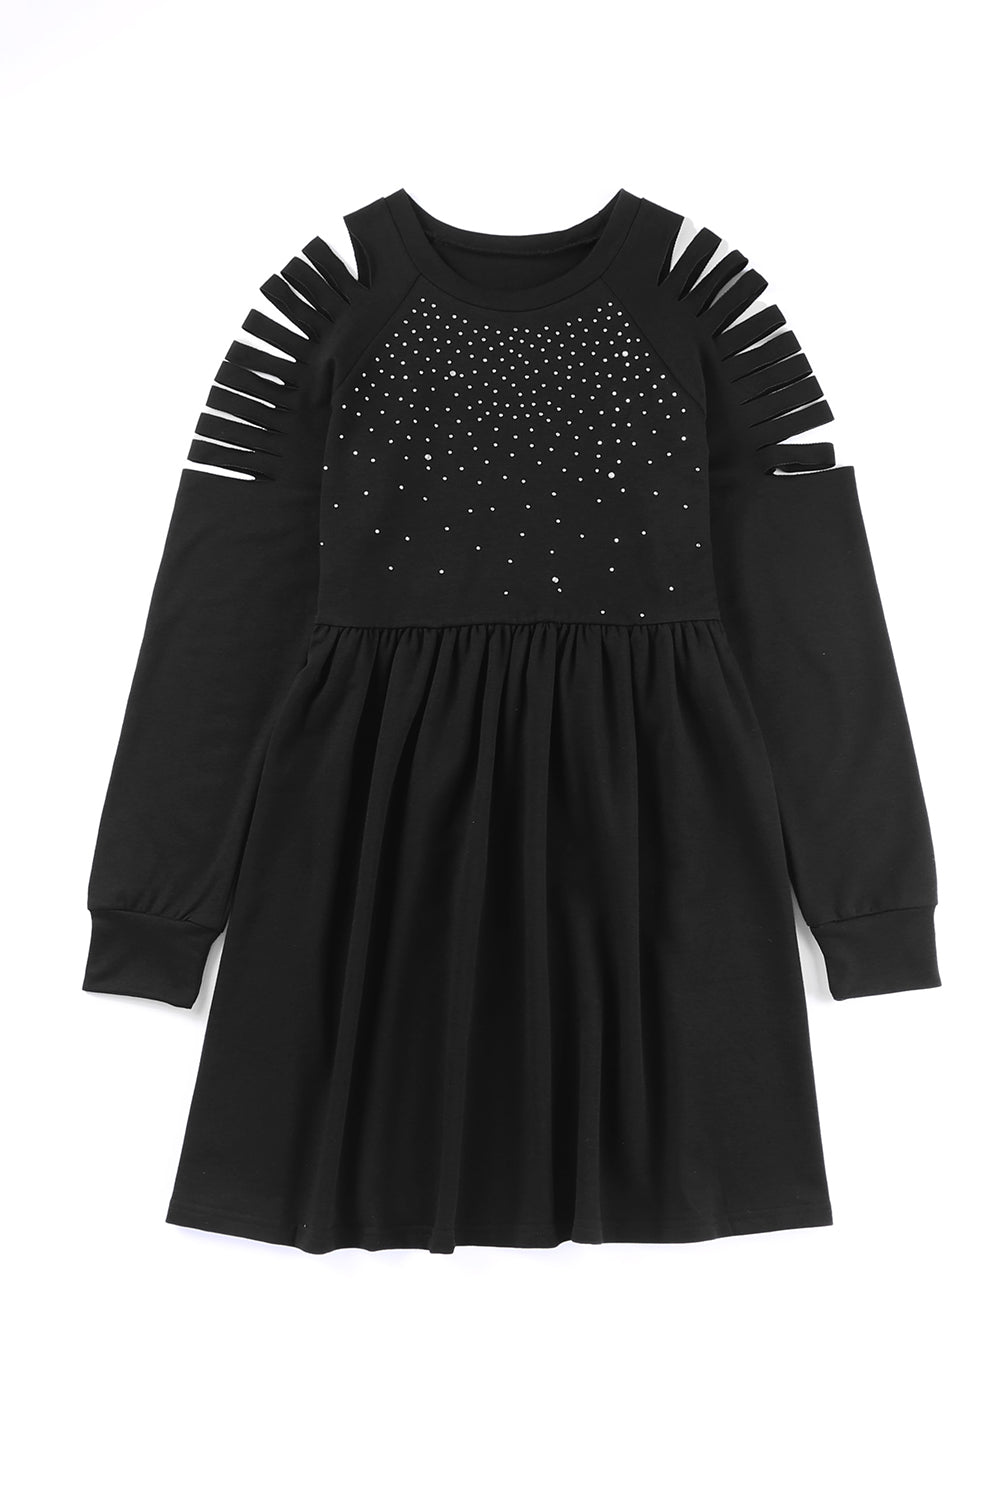 Black Rhinestone Ruffled Hollow Out Mini Dress Mini Dresses JT's Designer Fashion